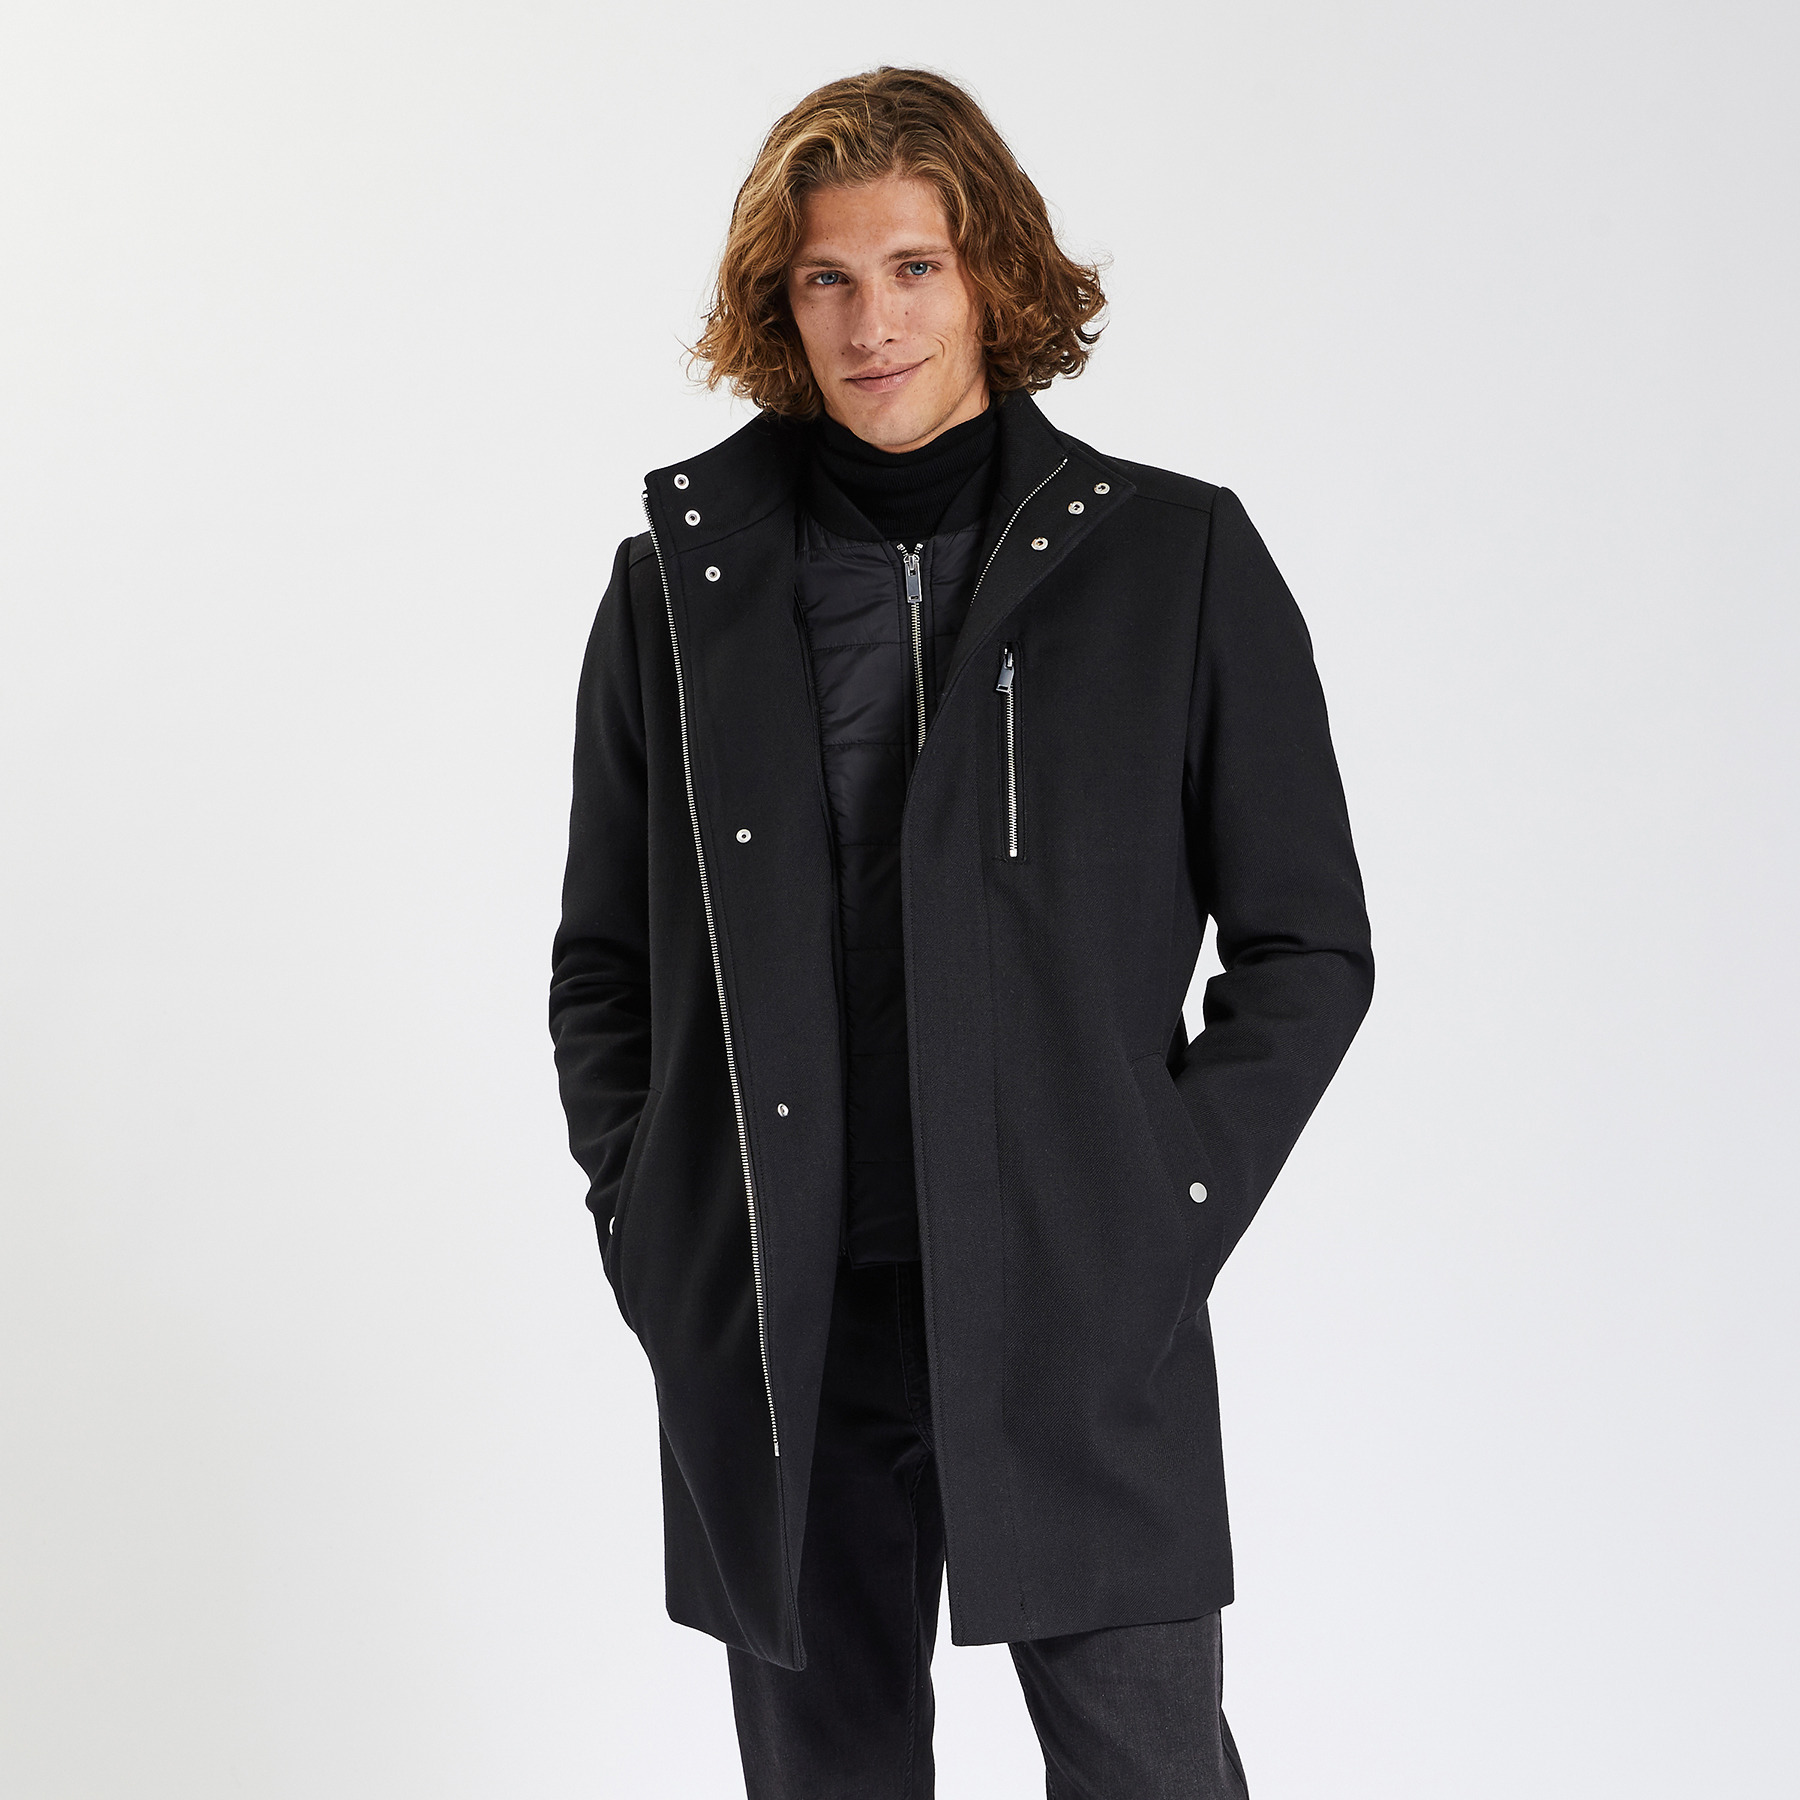 Manteau zippé col montant Noir S Polyester Homme